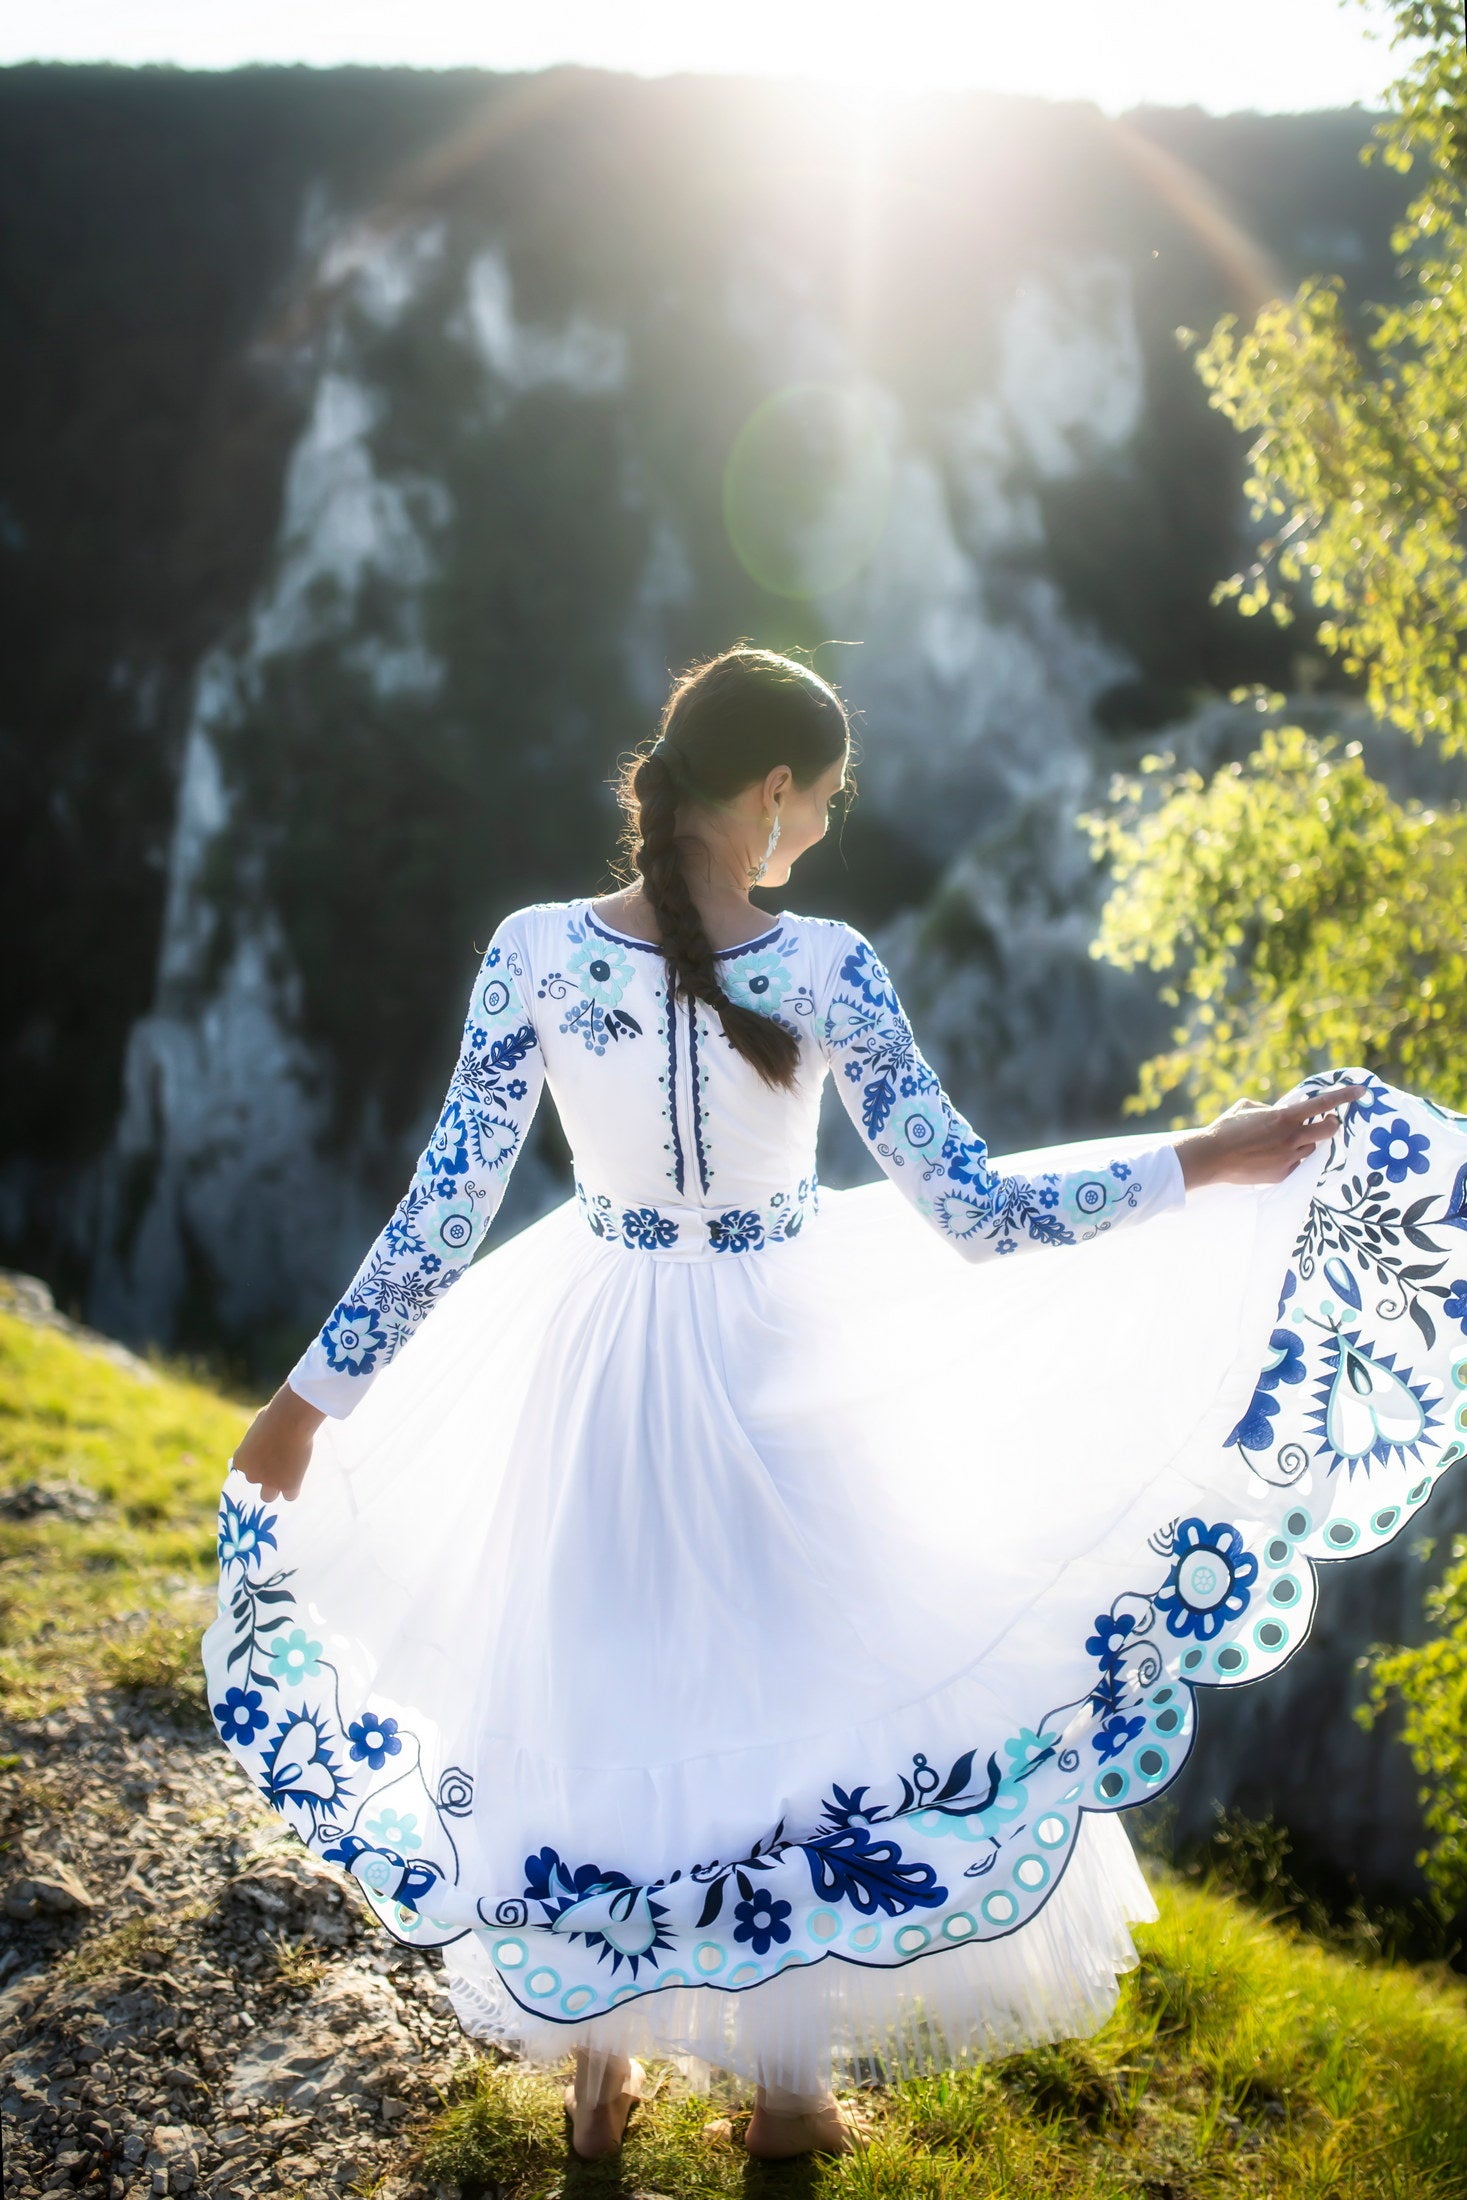 Biele vyšívané šaty Sága krásy